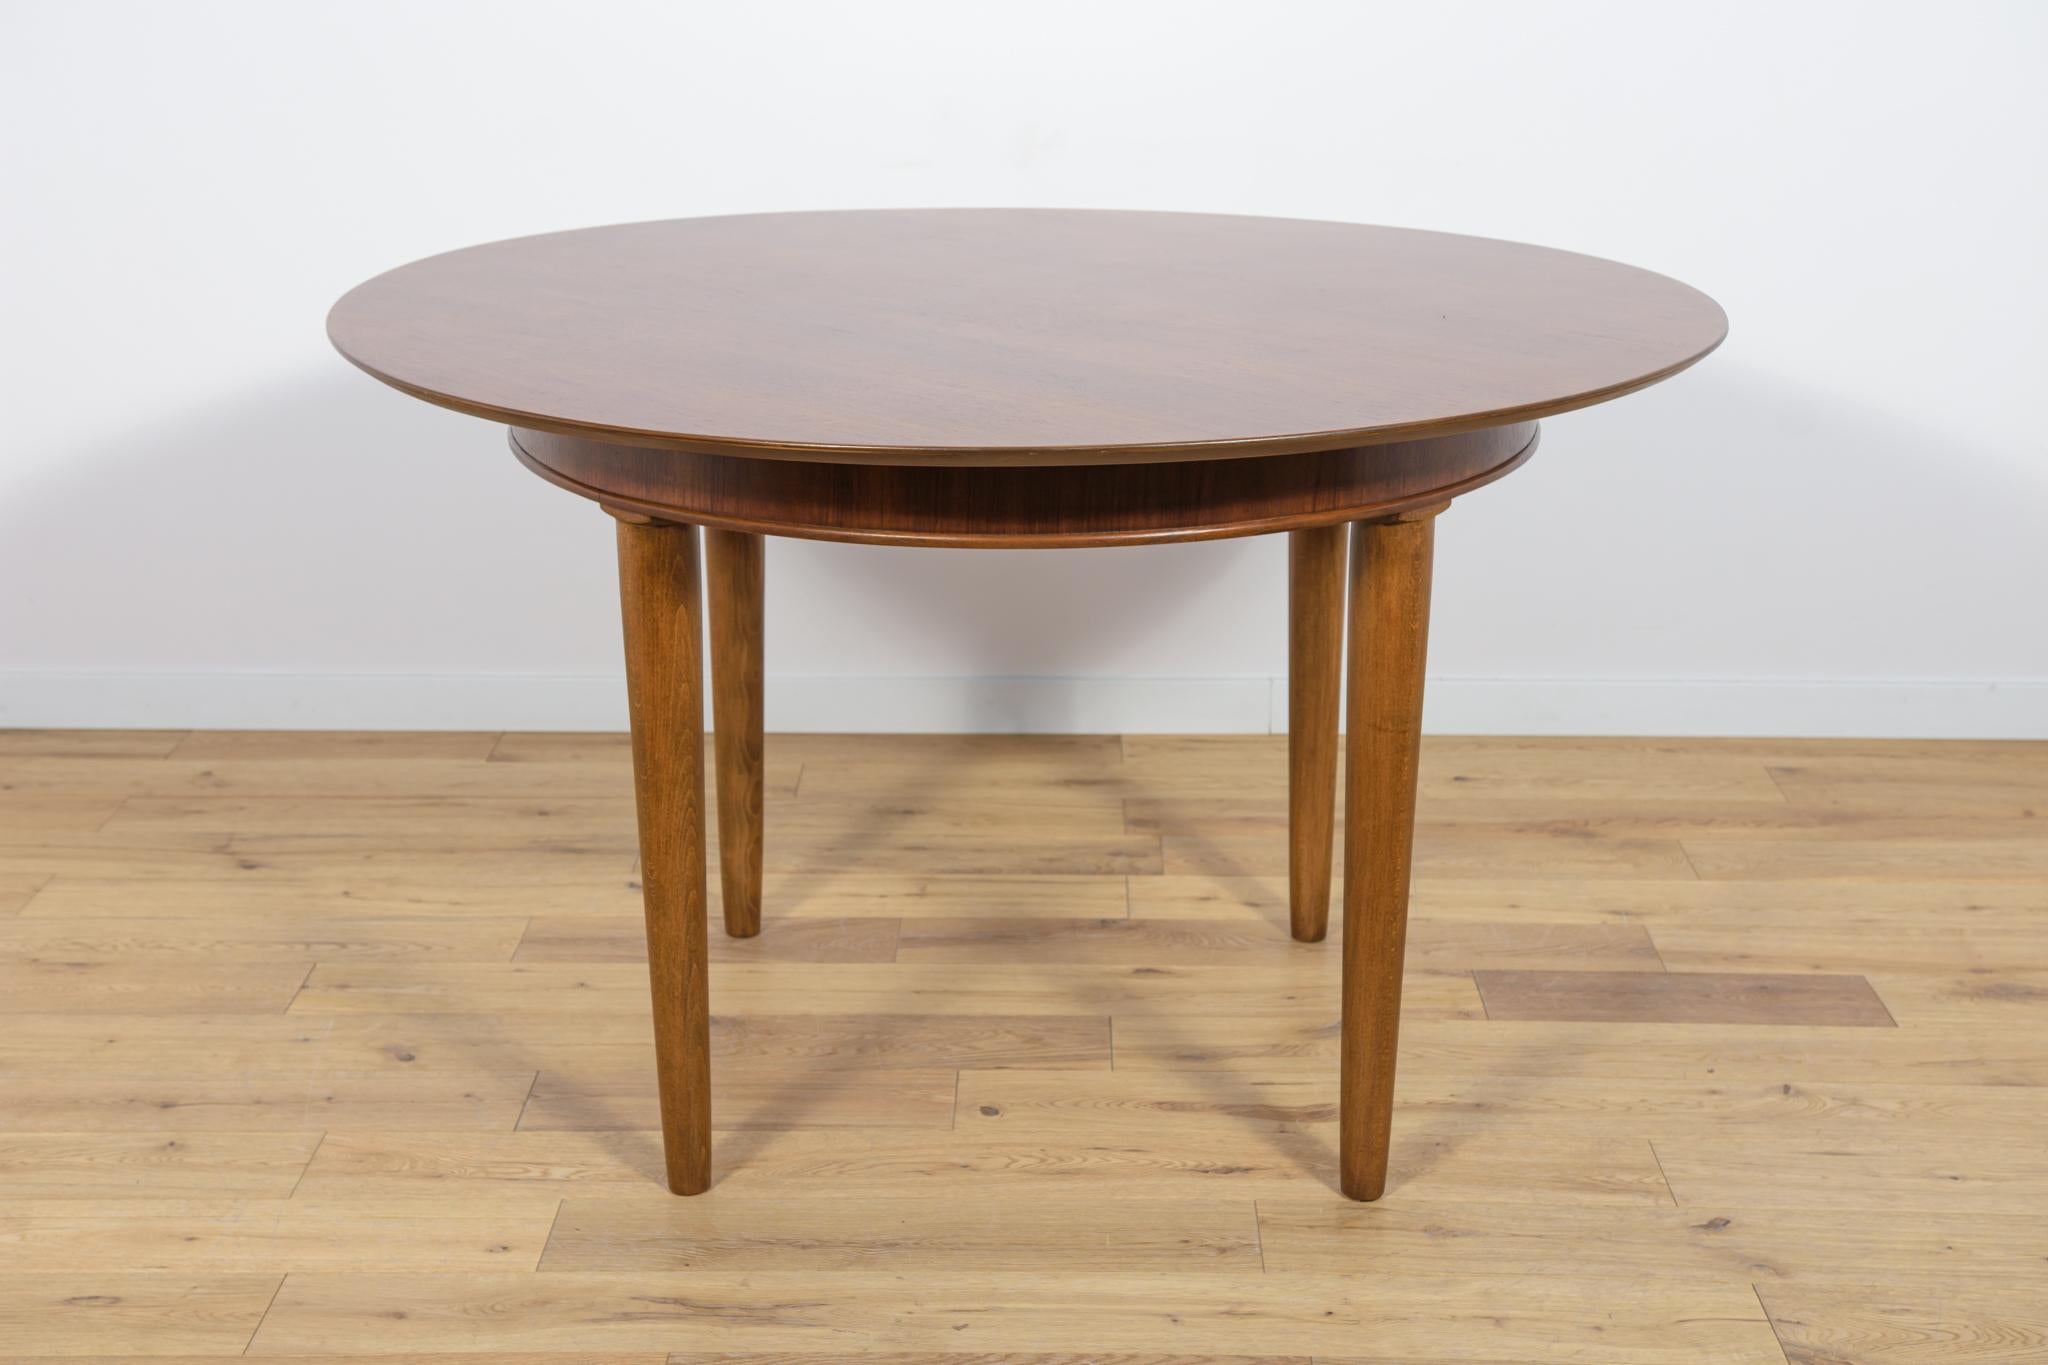 Table ronde en bois de teck, fabriquée en Grande-Bretagne dans les années 1950. La table présente un grain intéressant. Le mobilier a fait l'objet d'une rénovation complète de la menuiserie. Elle a été nettoyée de l'ancienne surface, peinte avec de